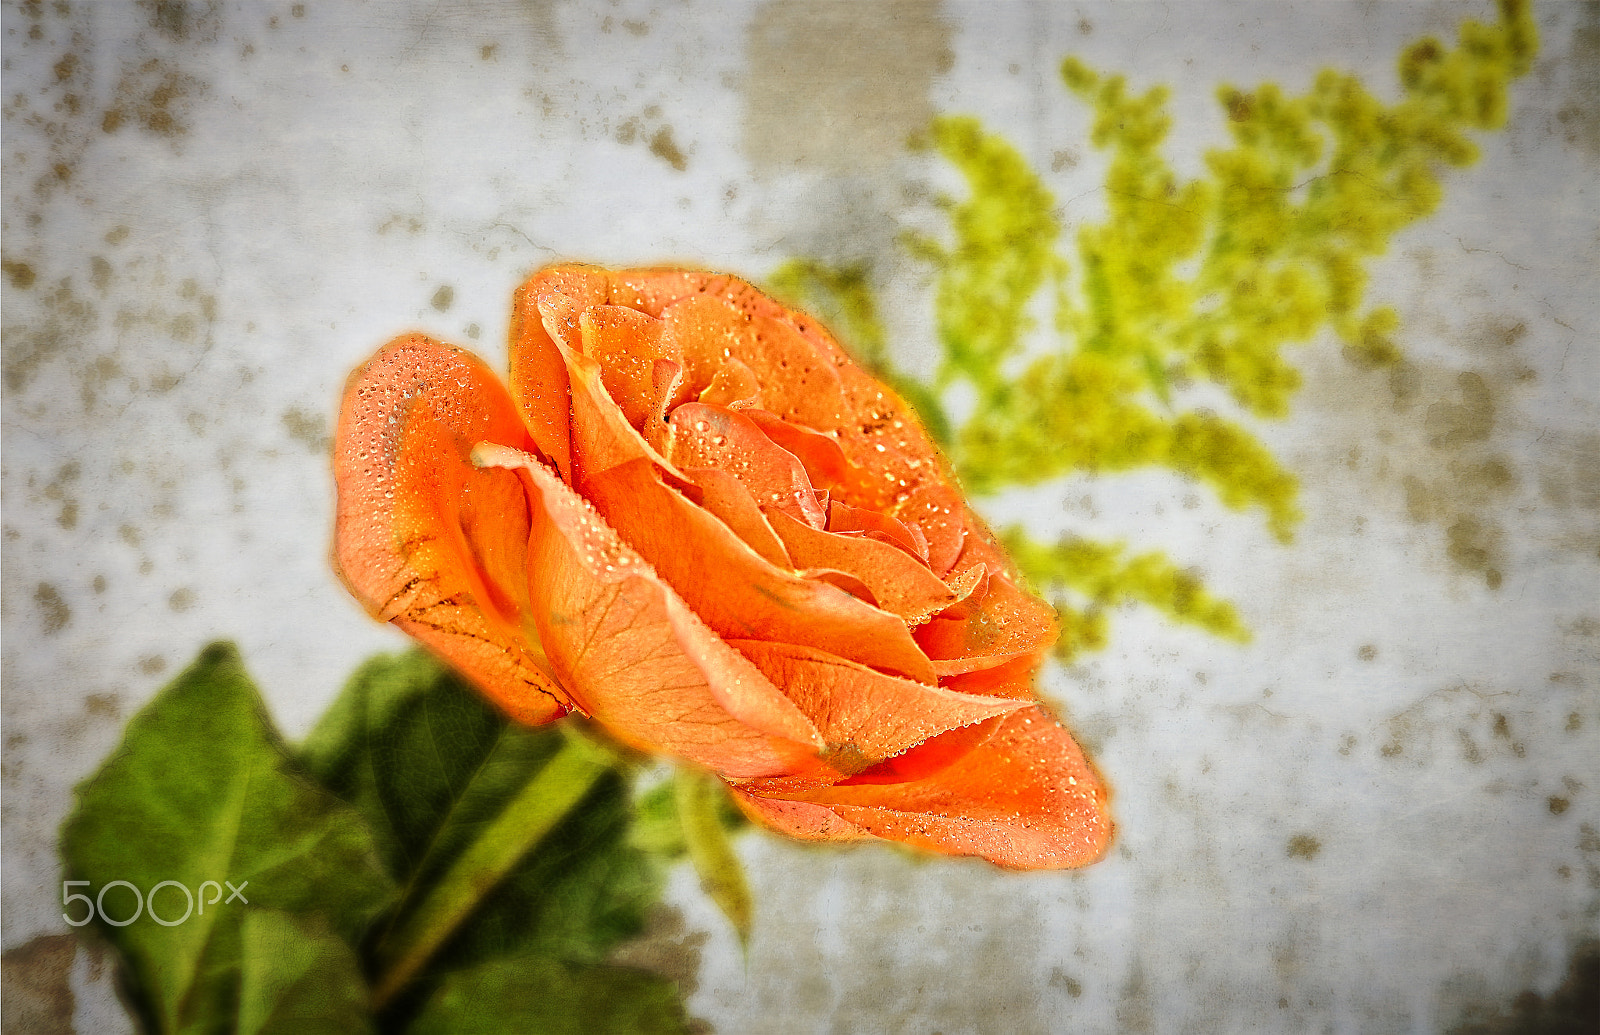 Nikon D7000 sample photo. Papaya rose photography